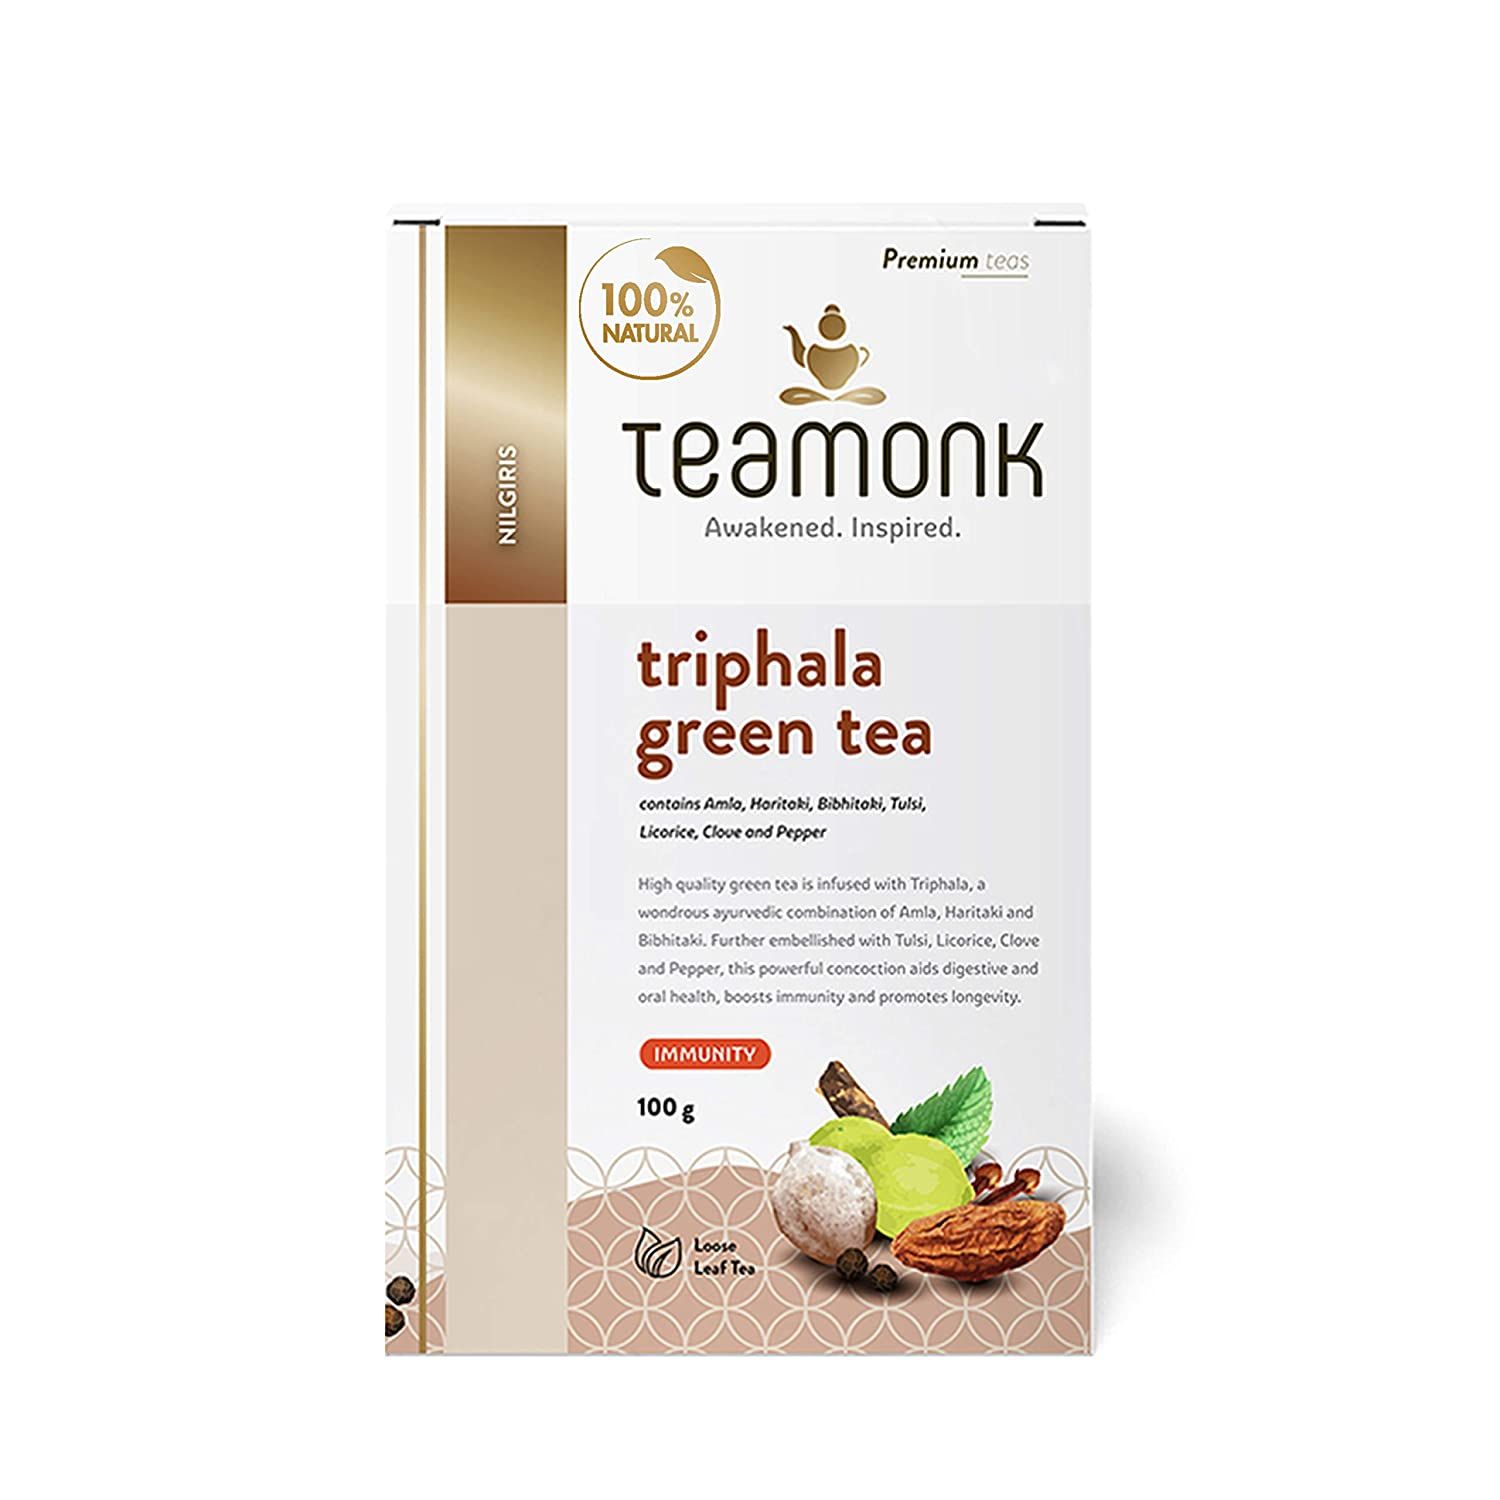 Teamonk Triphala Green Tea Image